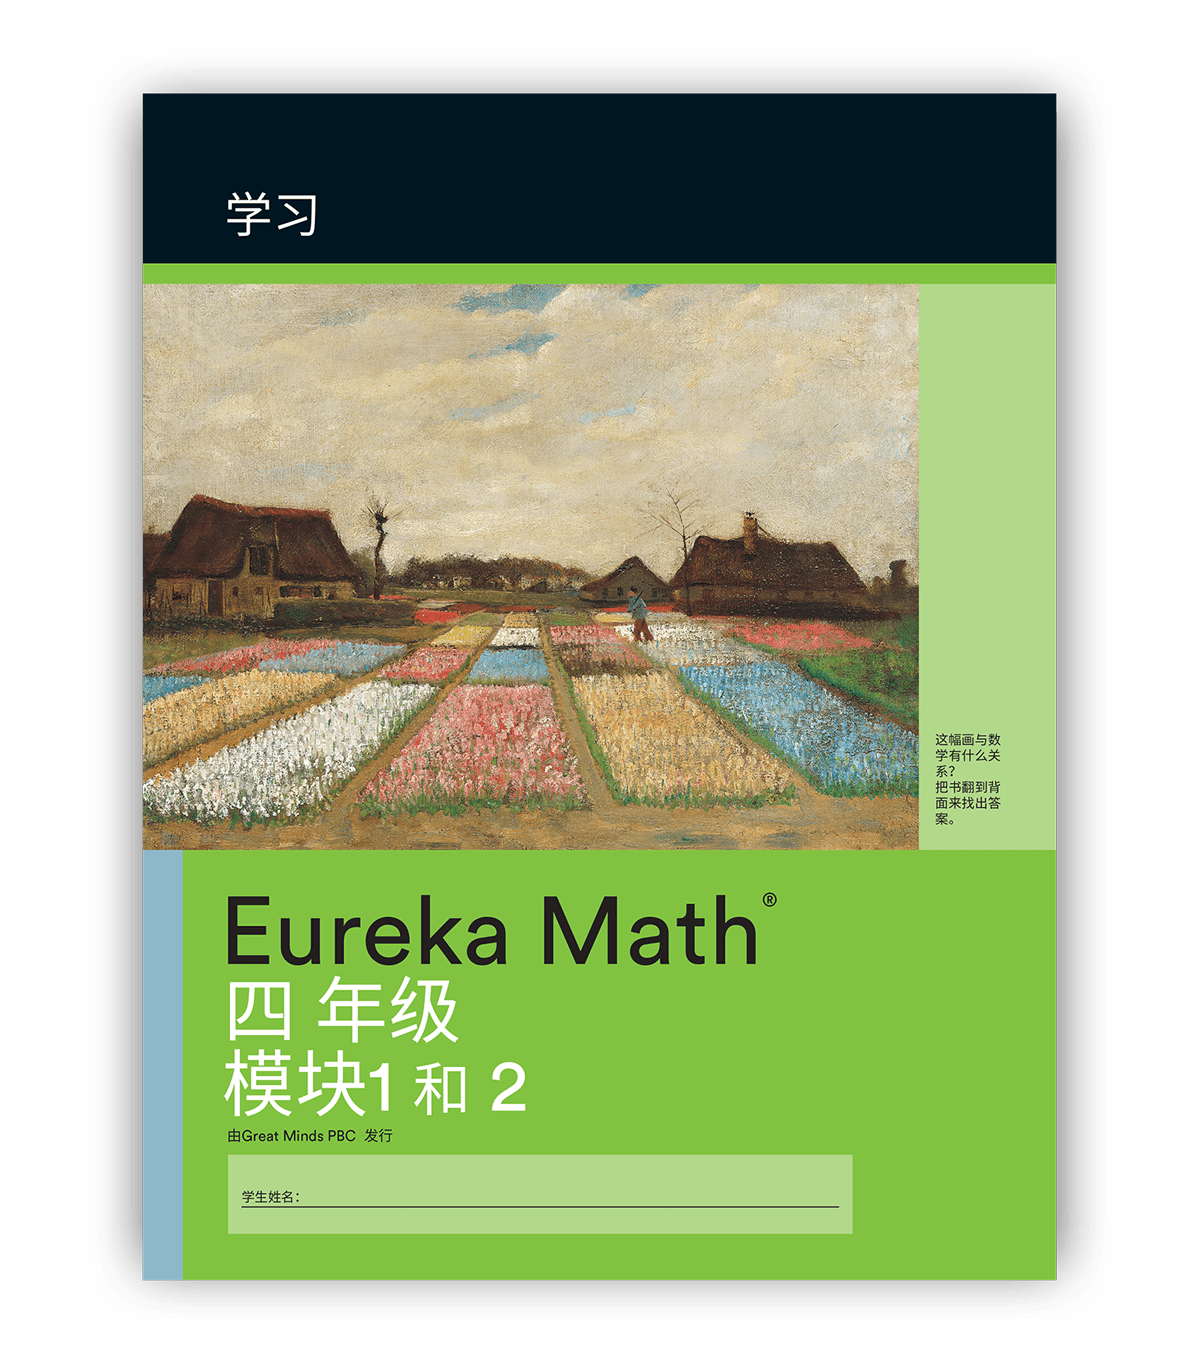 Eureka Math in Simplified Chinese